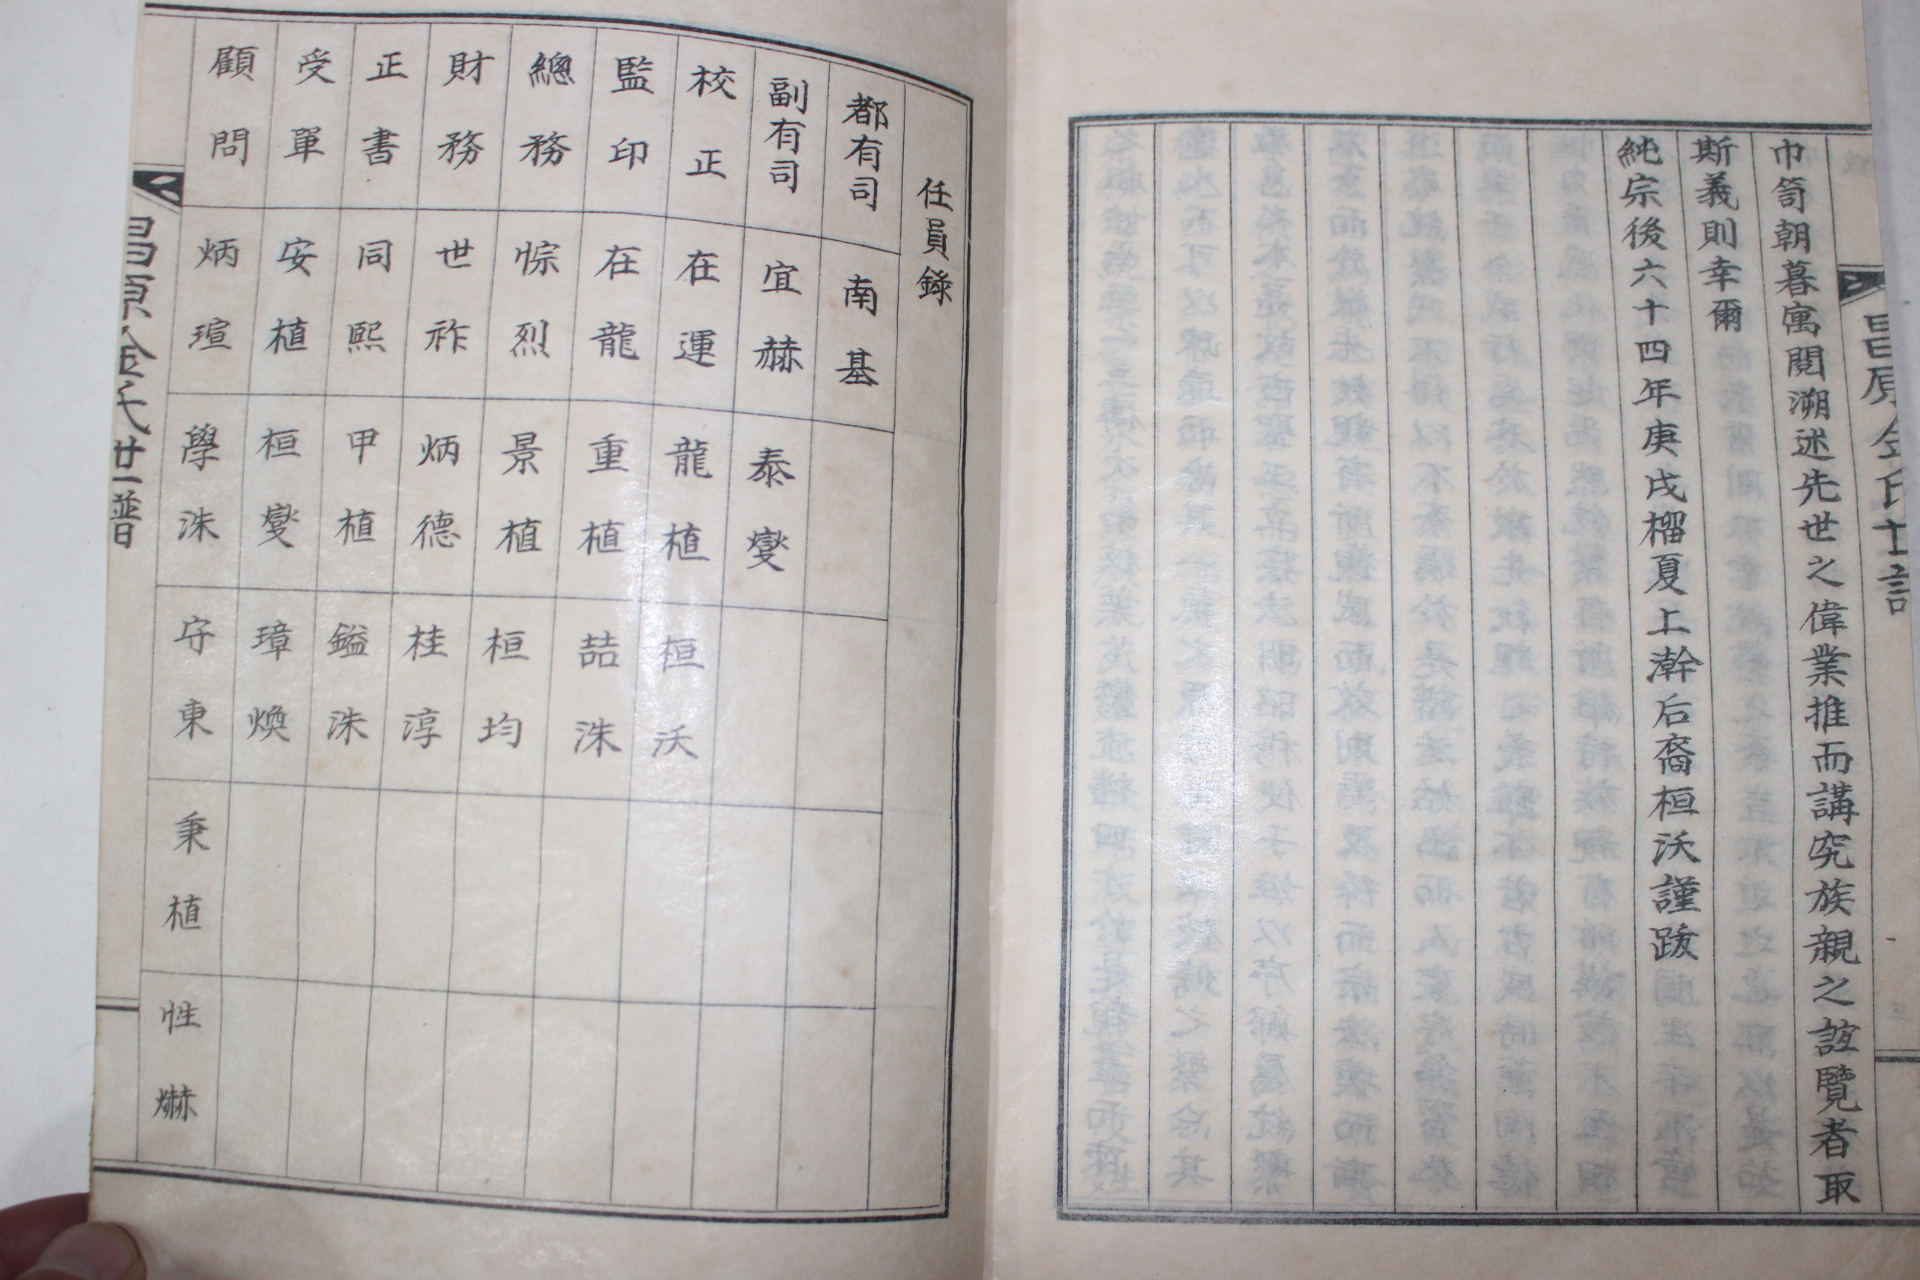 1970년 석판본 창원김씨세보(昌原金氏世譜) 2책완질